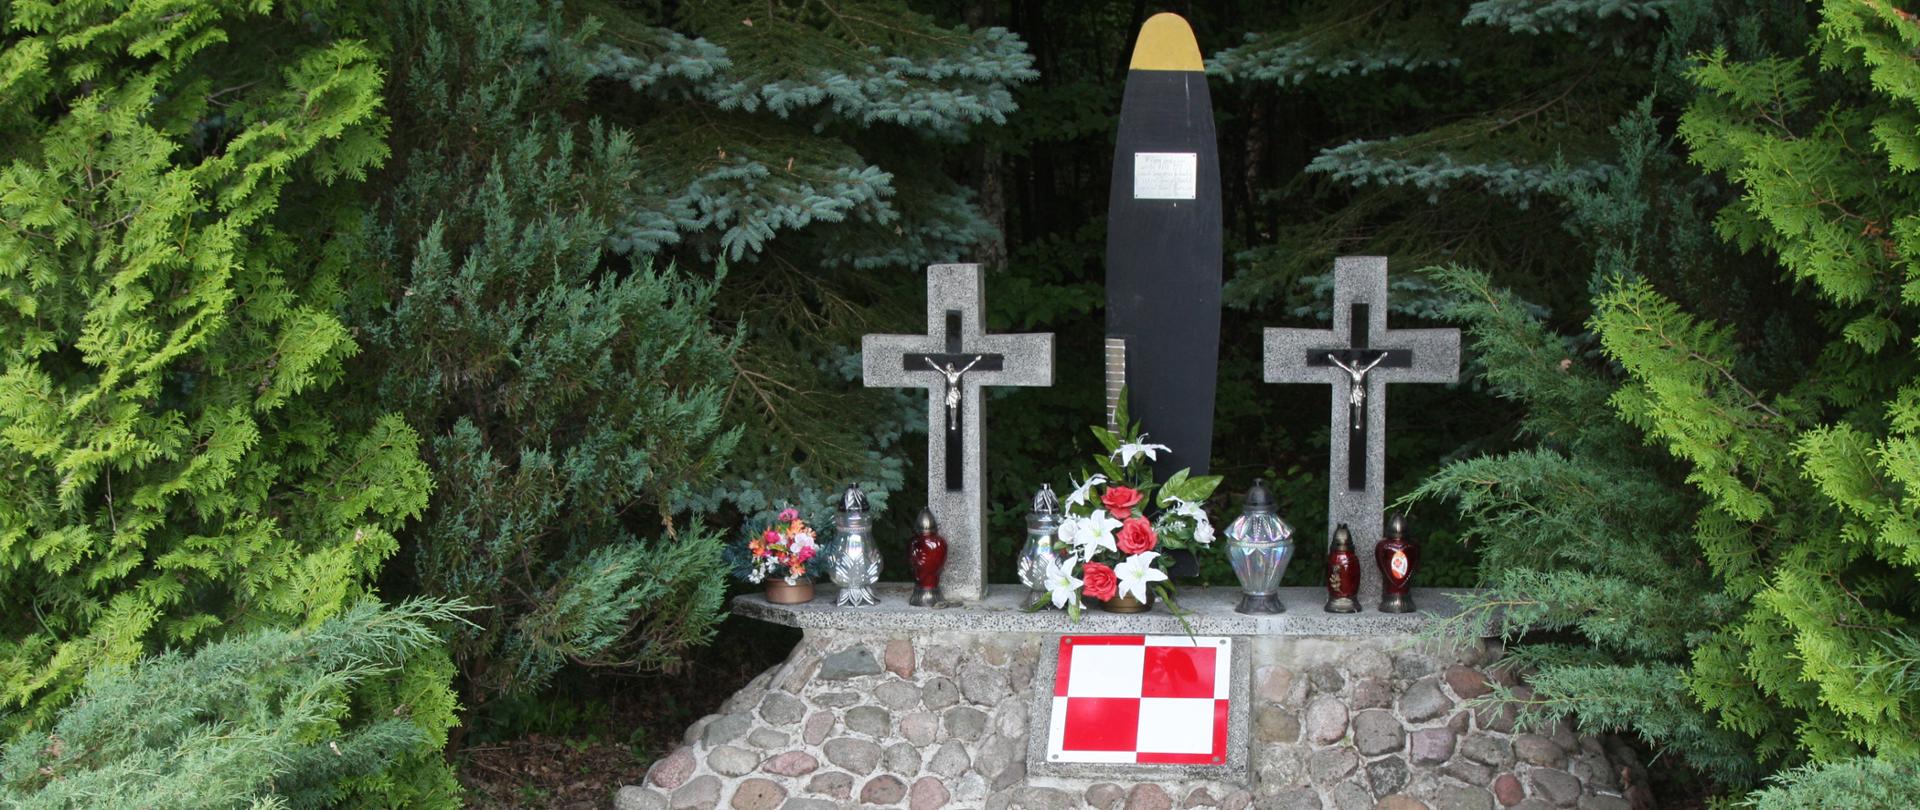 Pomnik upamiętniający zmarłych pilotów 10 czerwca 1997 r.